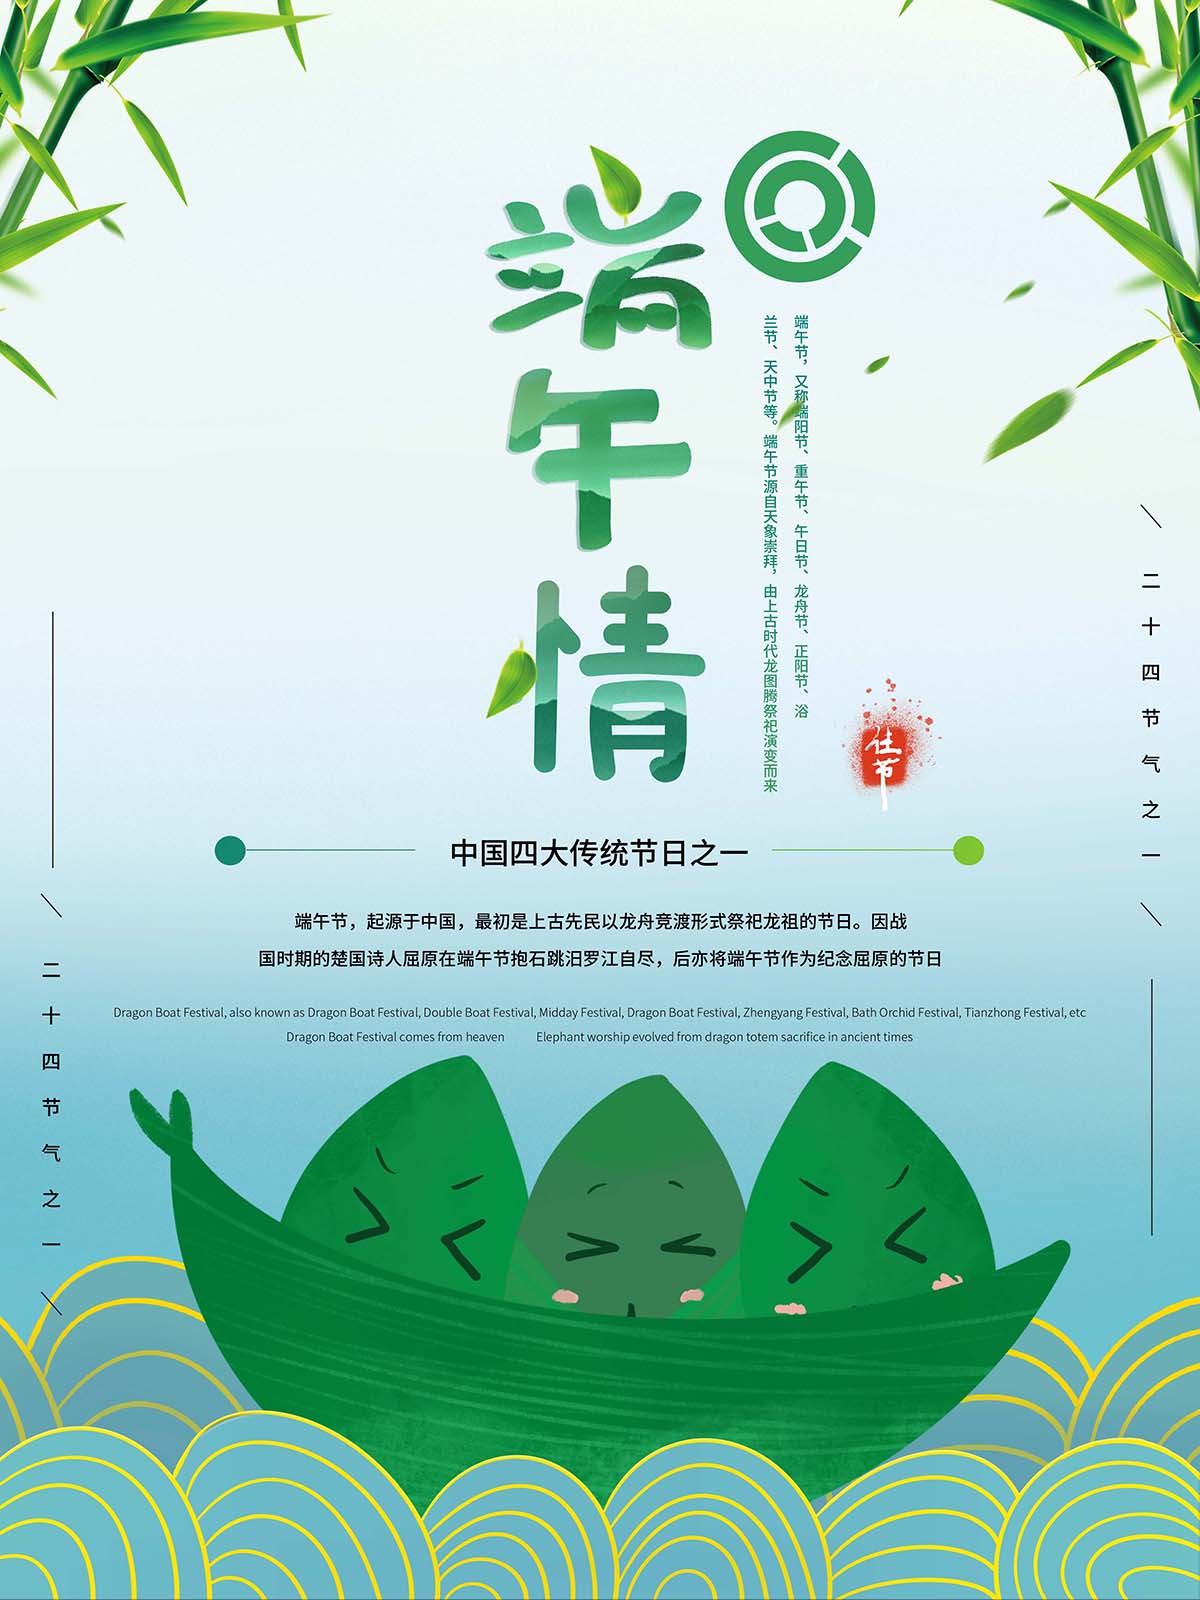 中国传统节日端午节赛龙舟海报设计PSD源文件